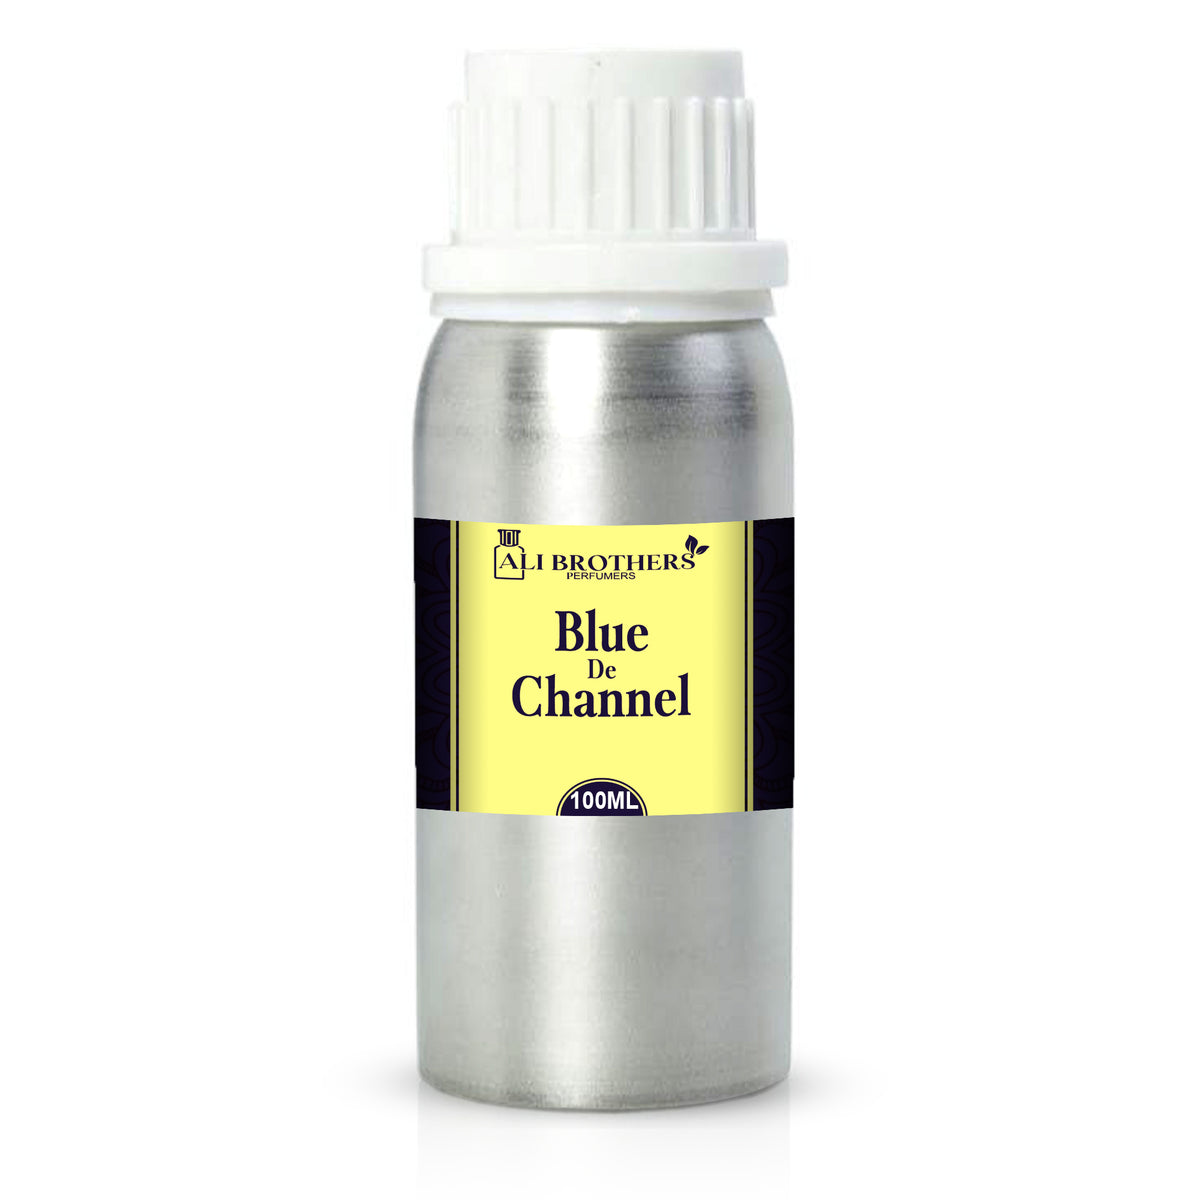 Blue D Channel